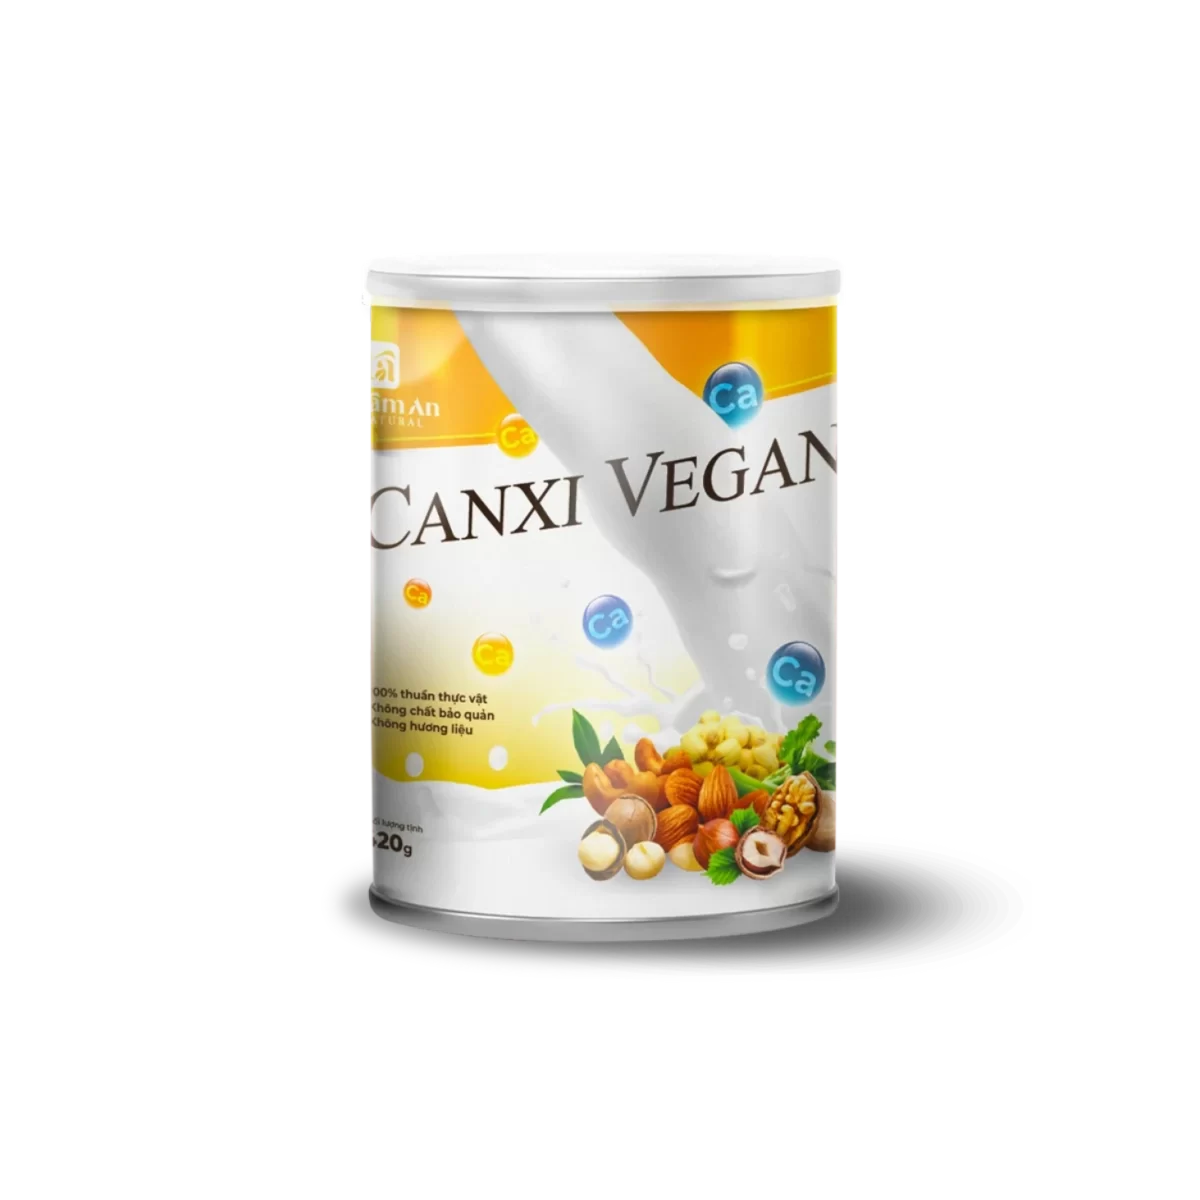 Canxi Vegan bổ sung canxi cho cơ thể